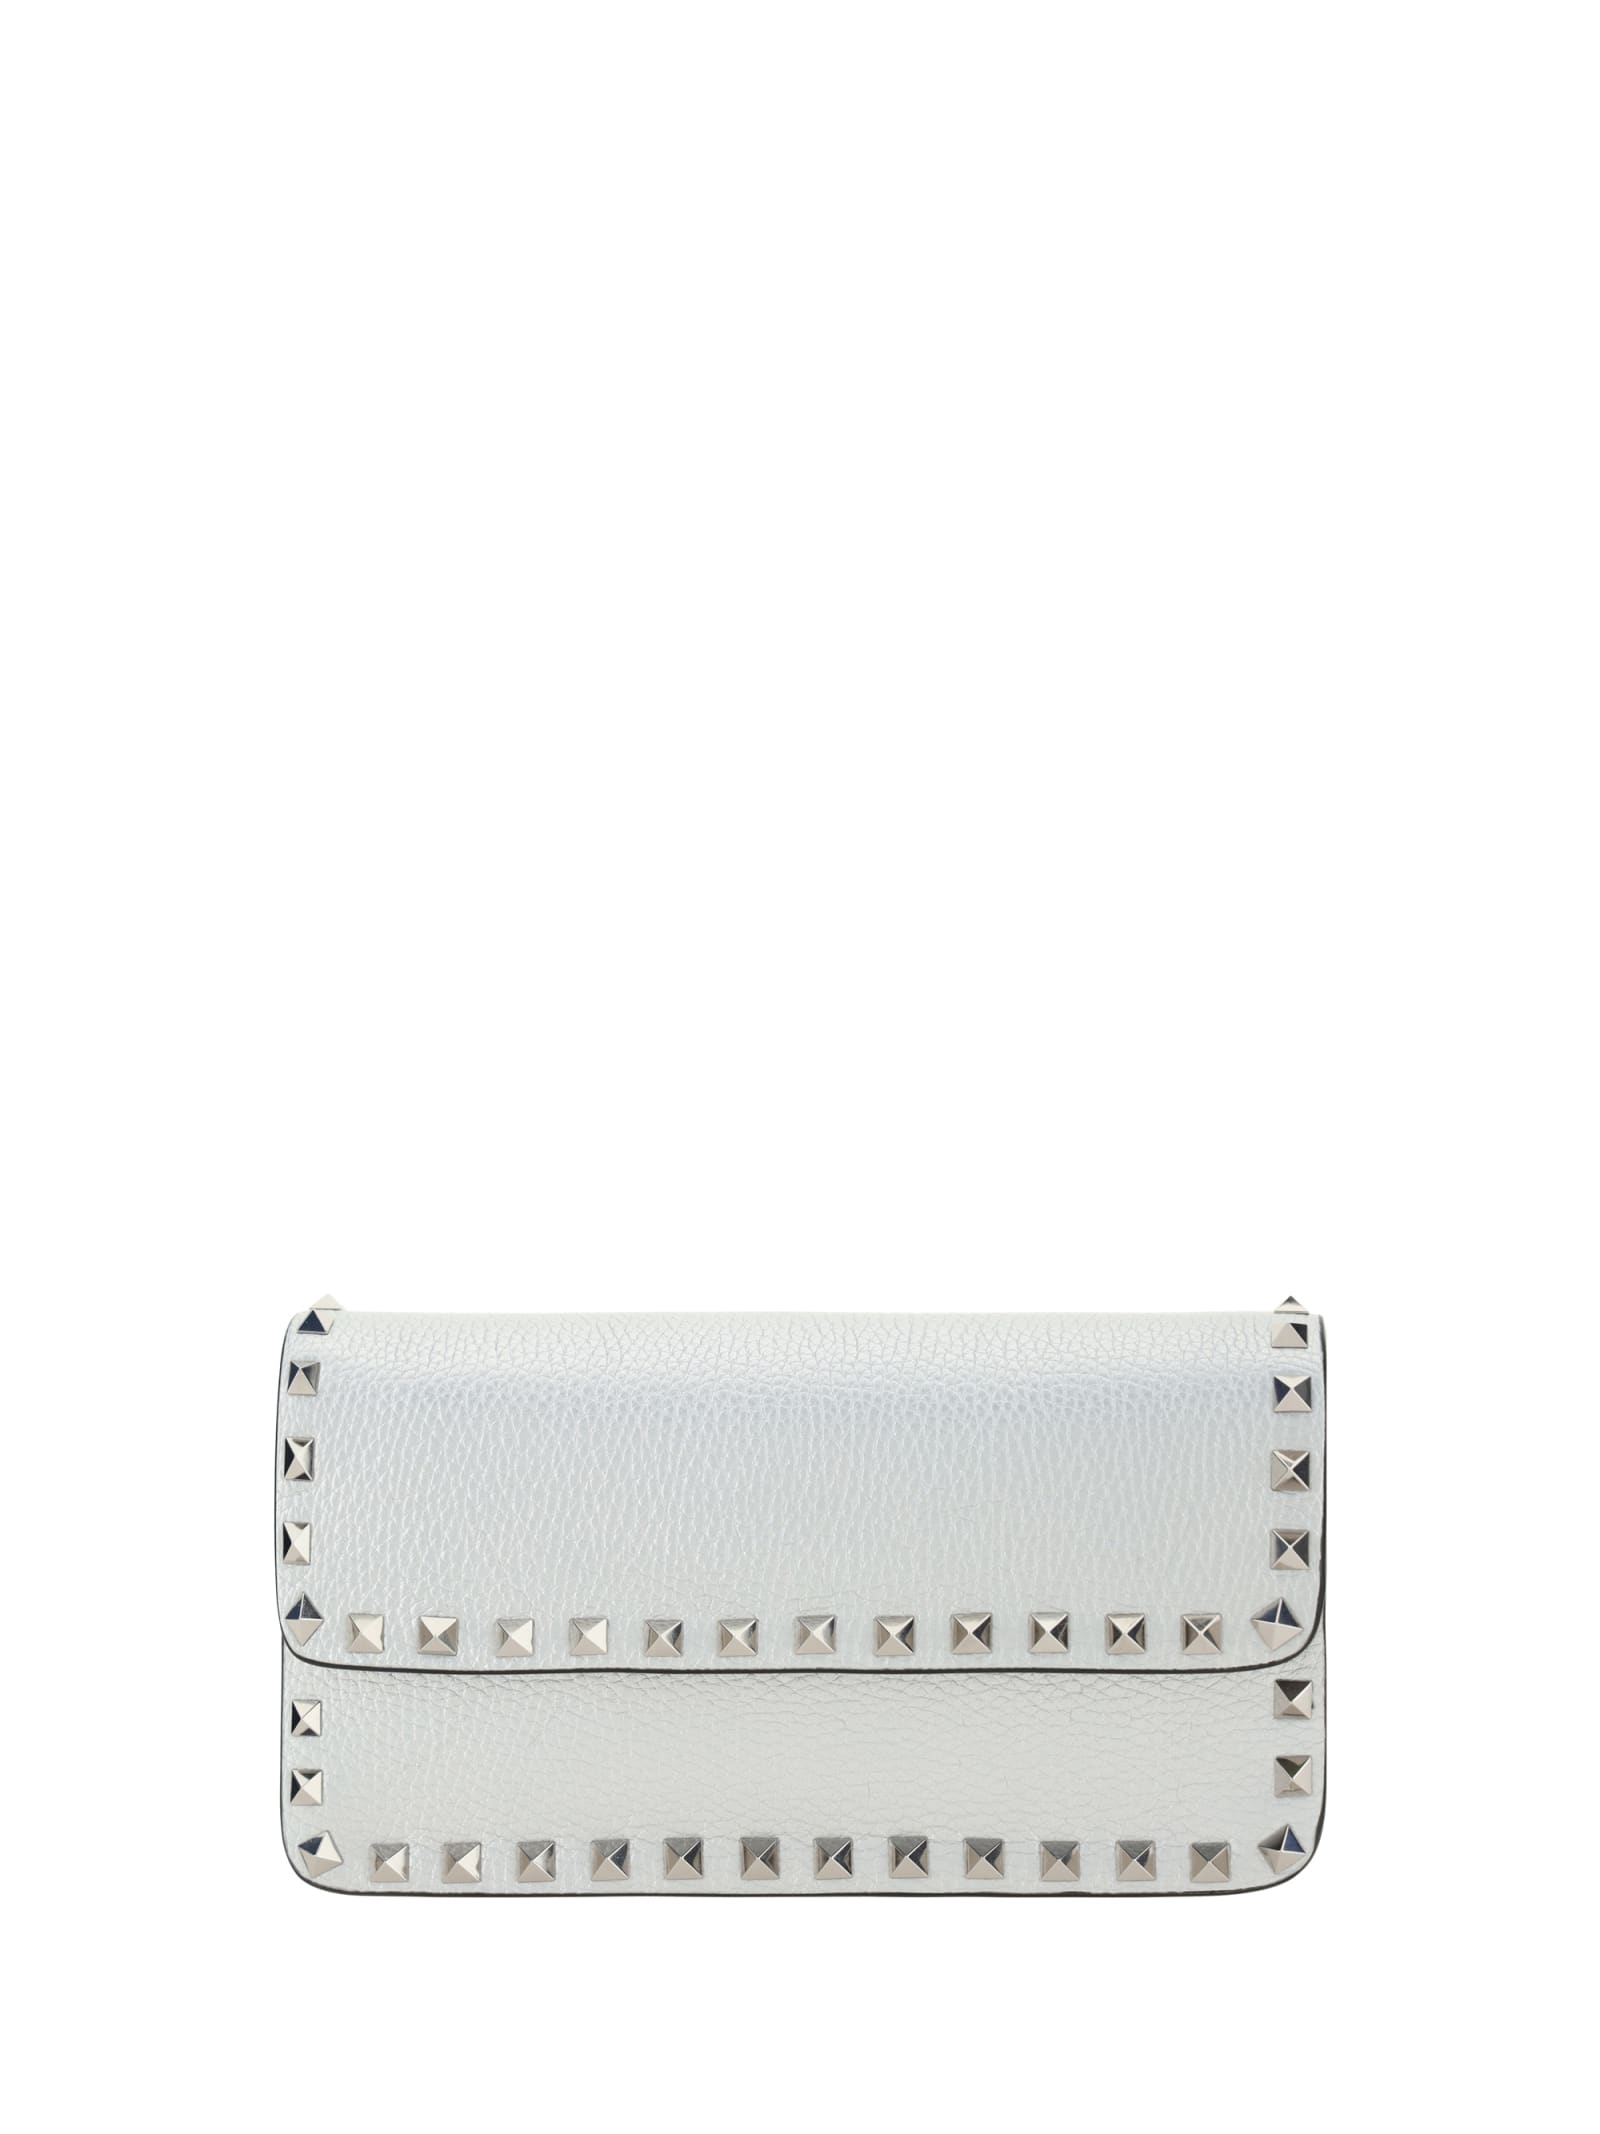 Valentino Garavani Rockstud Handbag In Silver